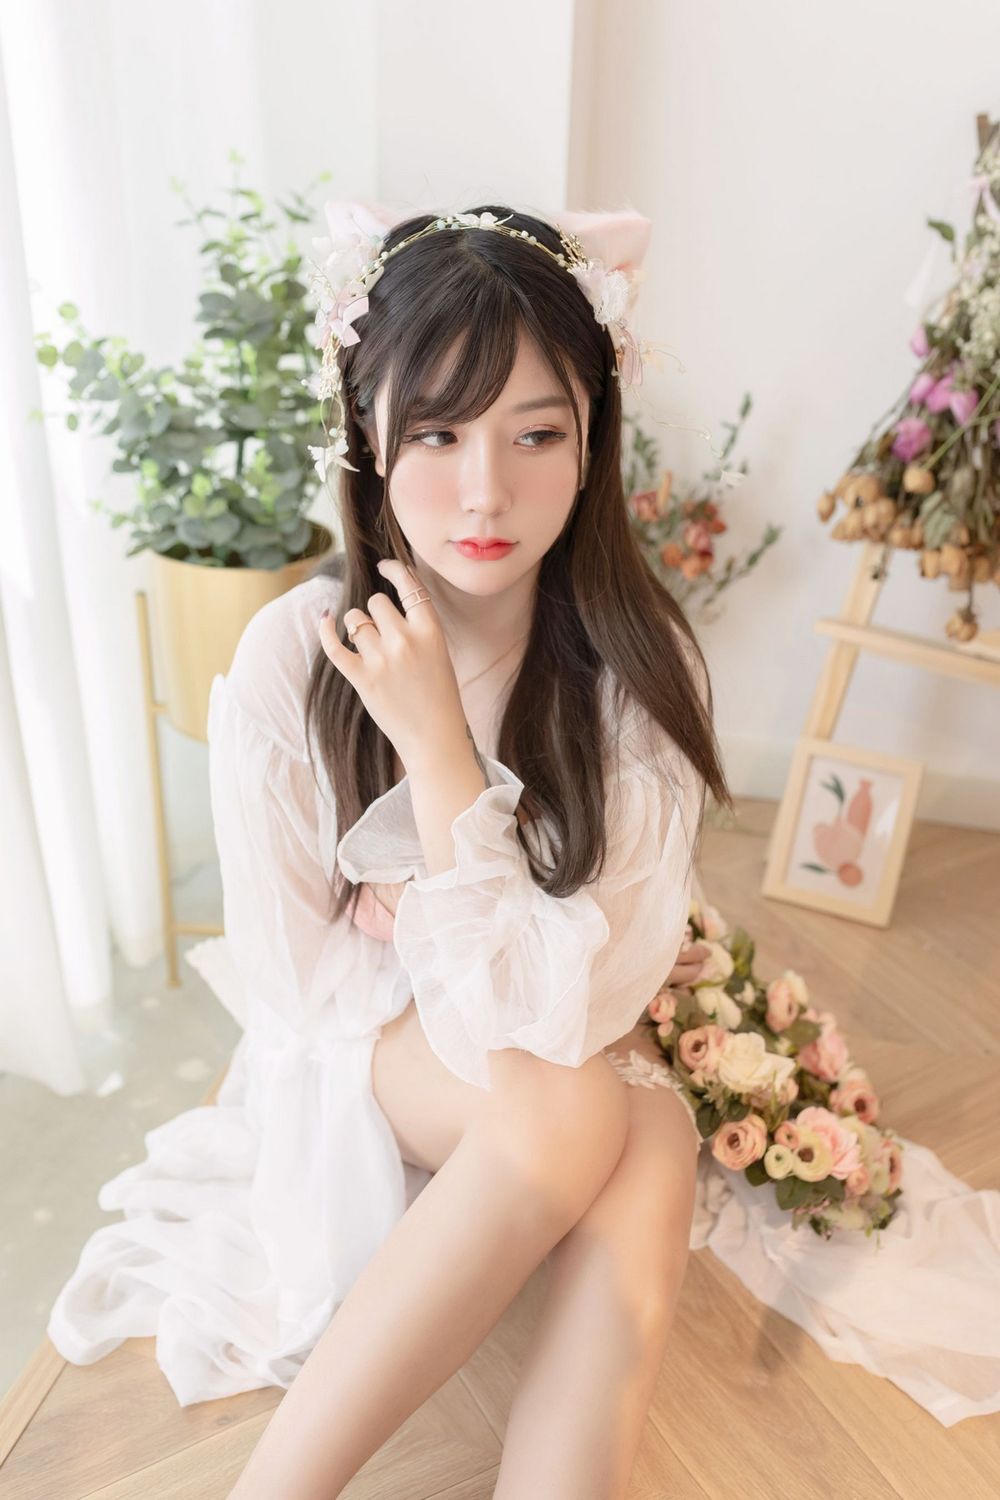 猫九酱Sakura粉色内衣傲人豪乳花仙子主题性感写真